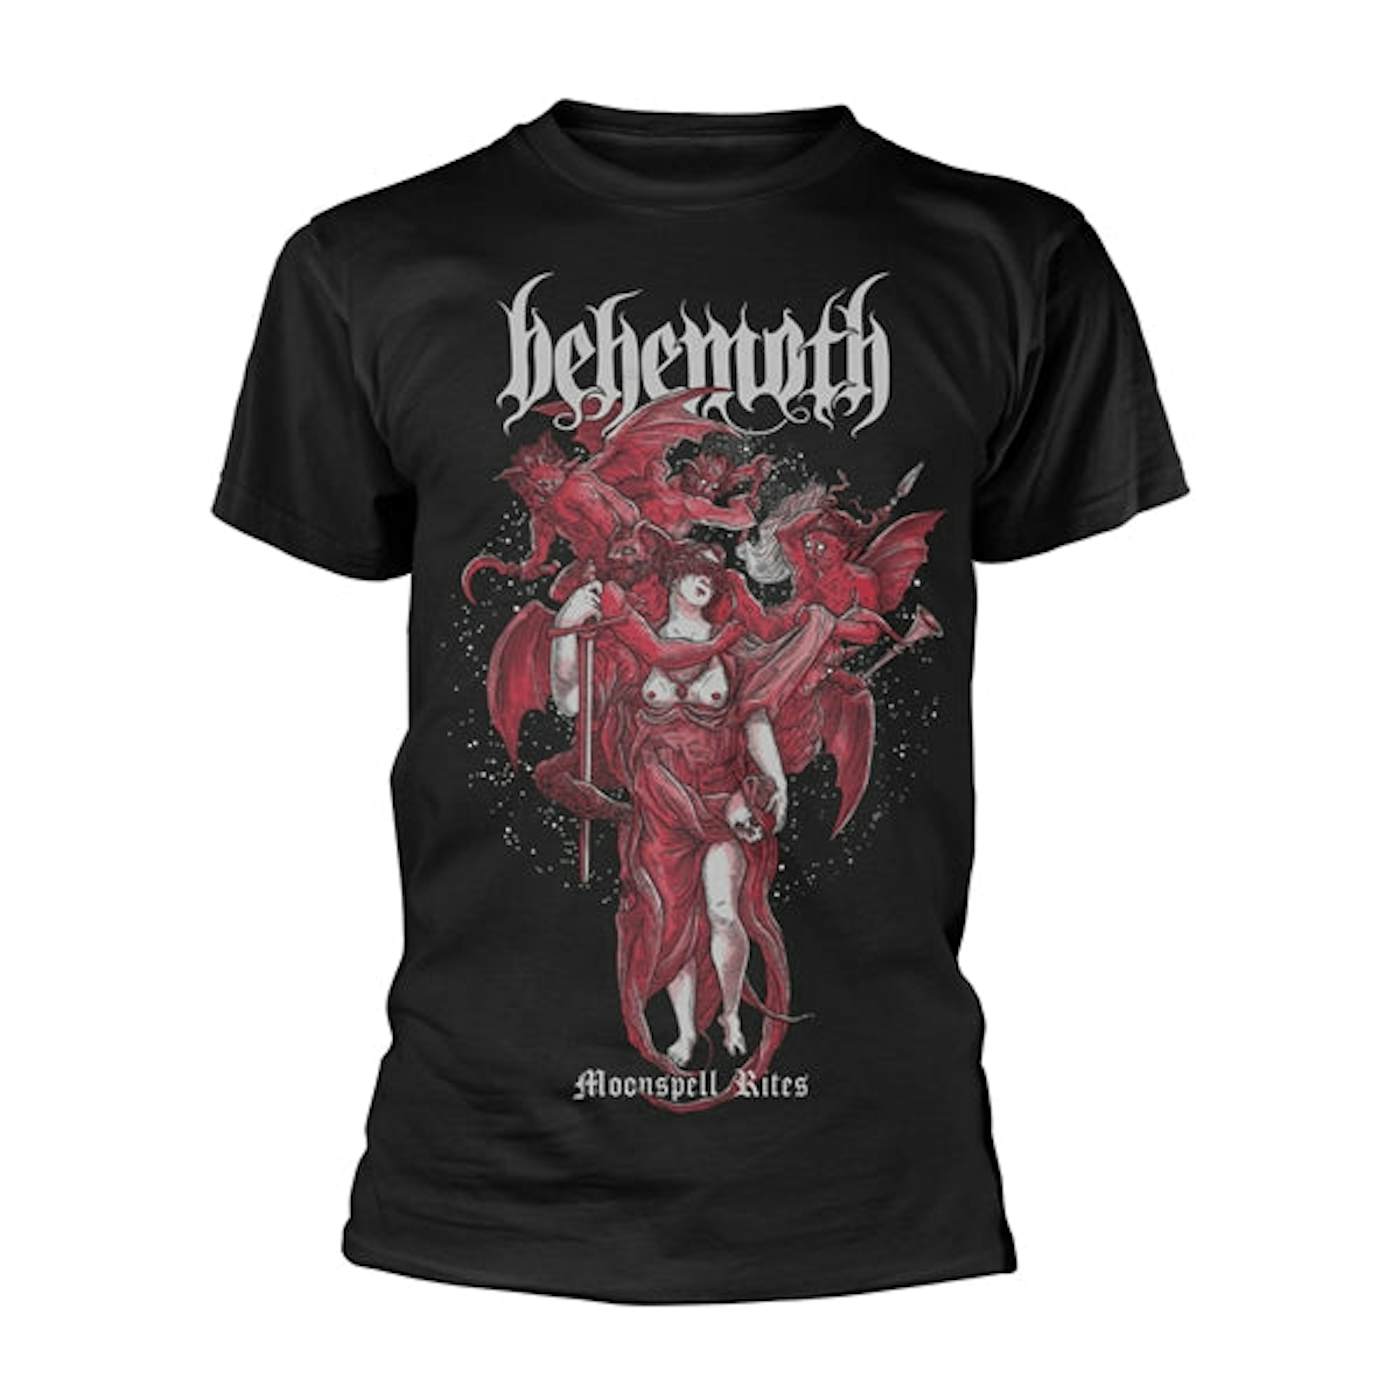 Behemoth T Shirt - Moonspell Rites